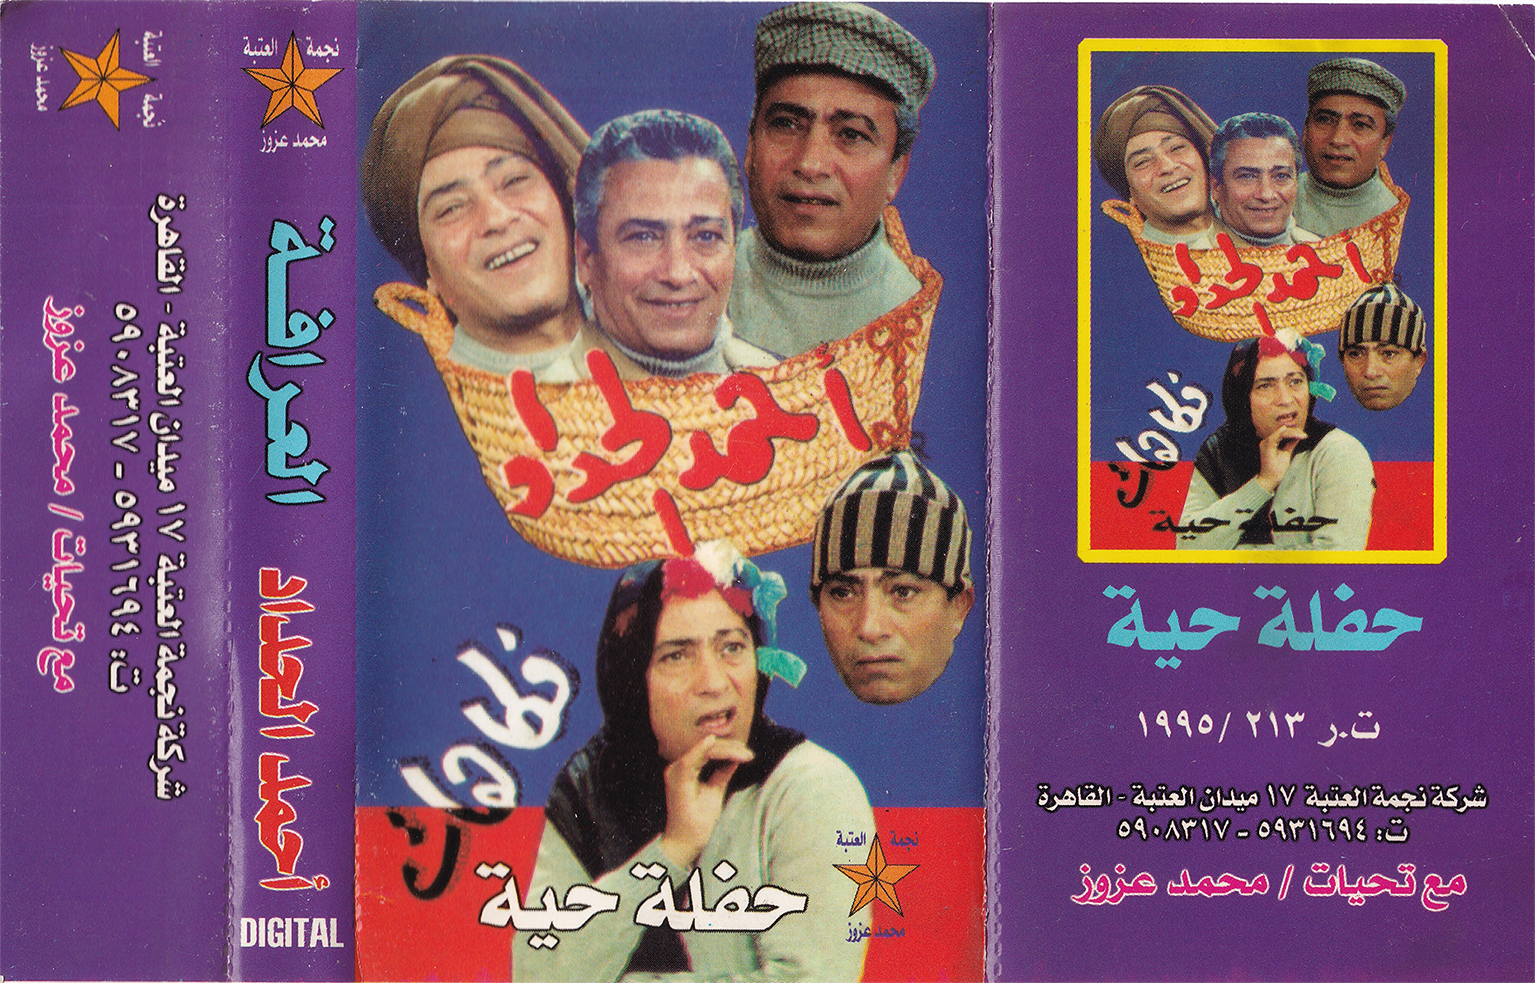 egypt cassette cover 